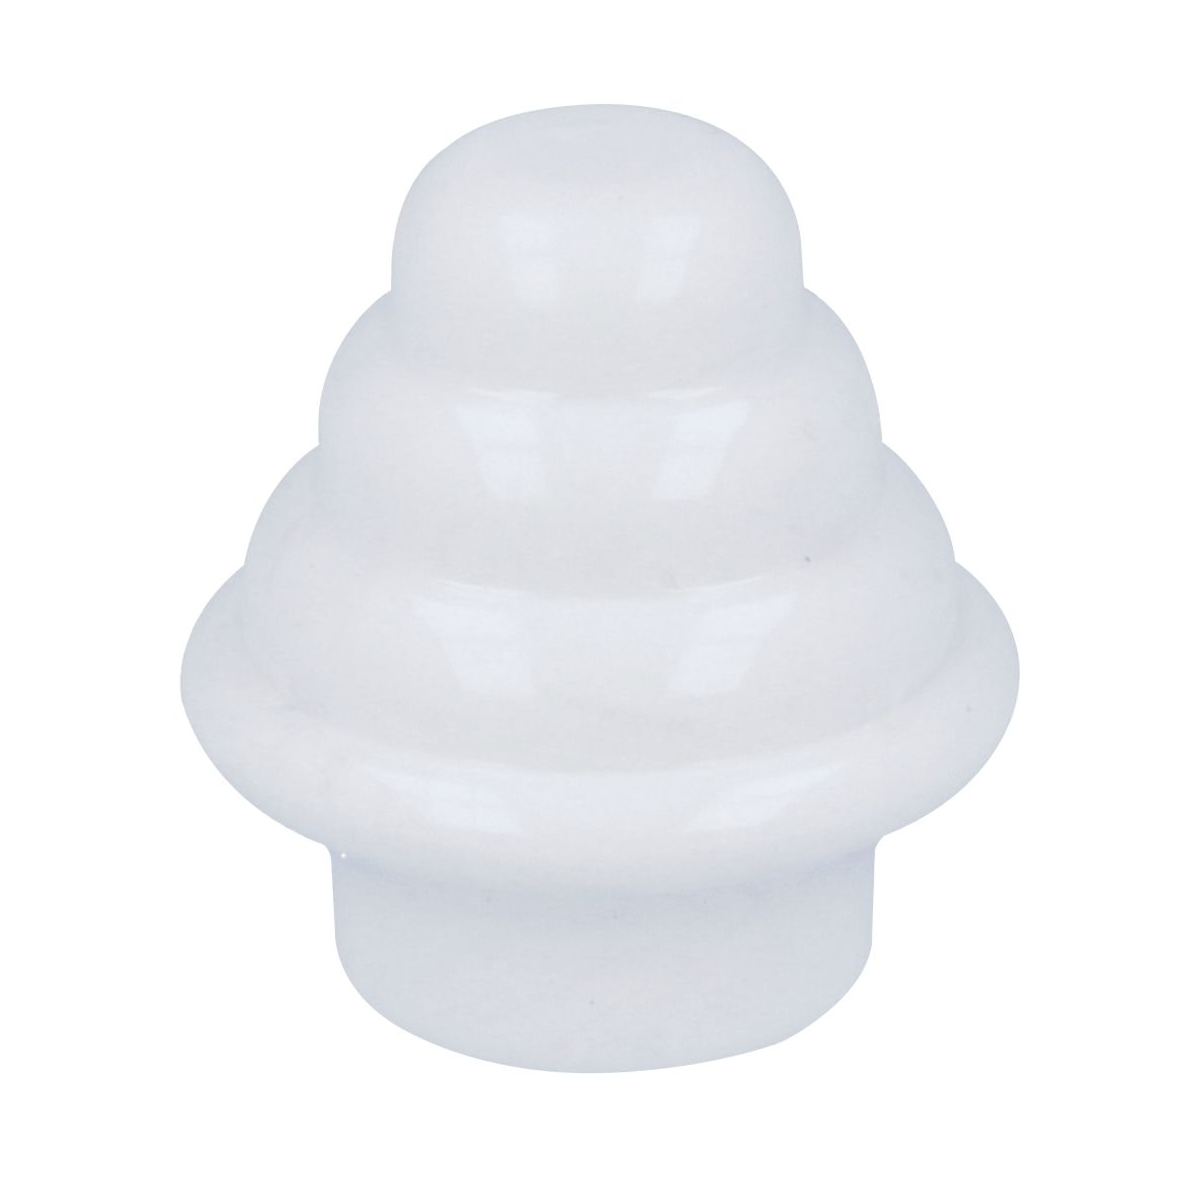 2 embellecedores blancos de Ø12MM fabricados en plástico ideales para tubos de armario